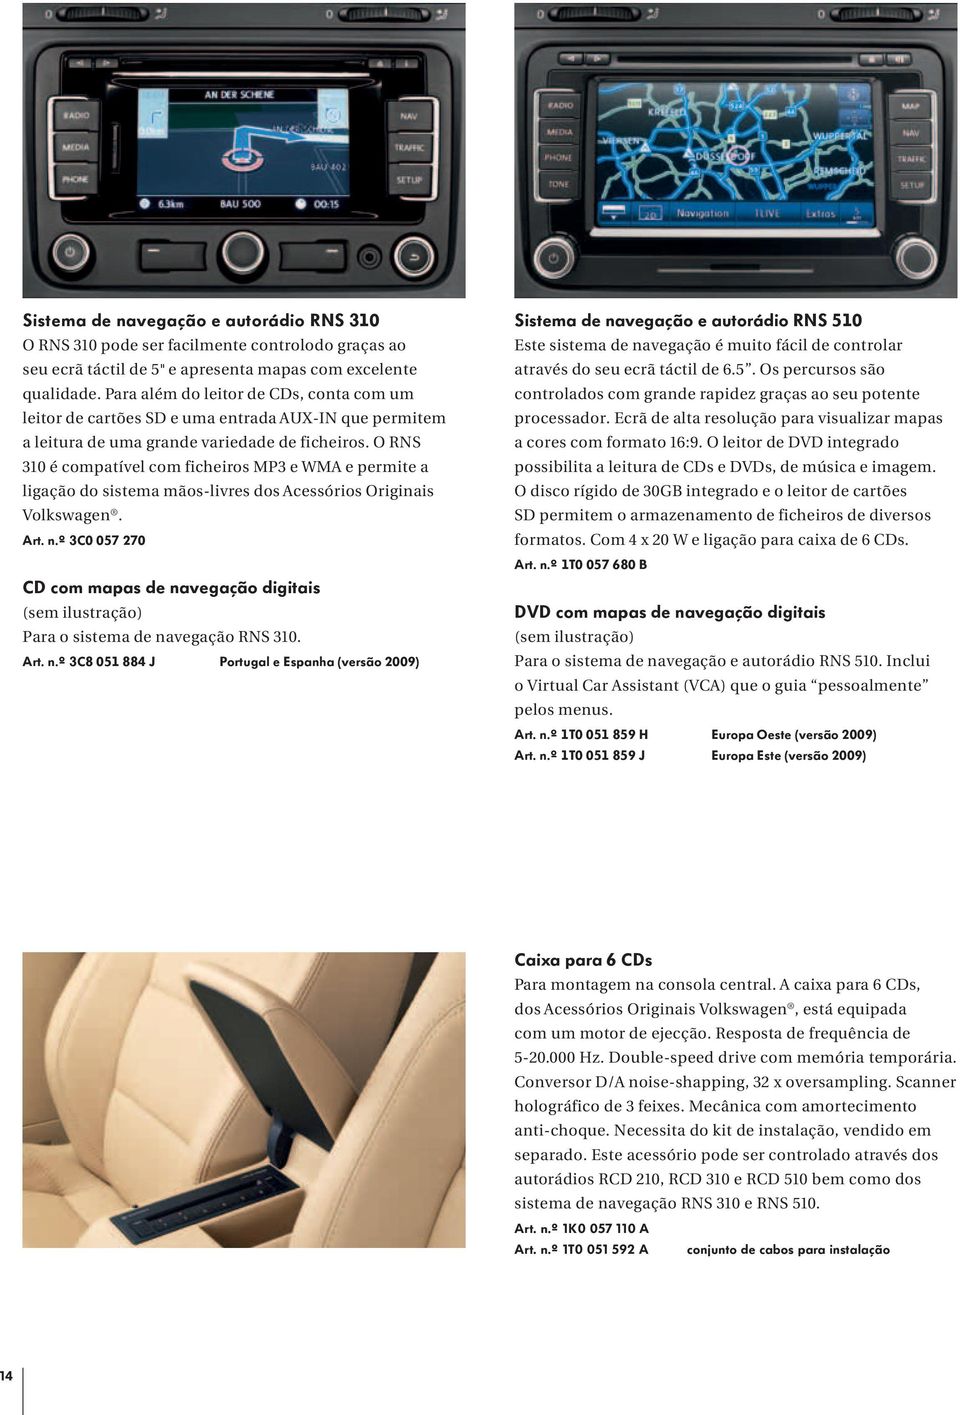 O RNS 310 é compatível com ficheiros MP3 e WMA e permite a ligação do sistema mãos-livres dos Acessórios Originais Volkswagen. Art. n.